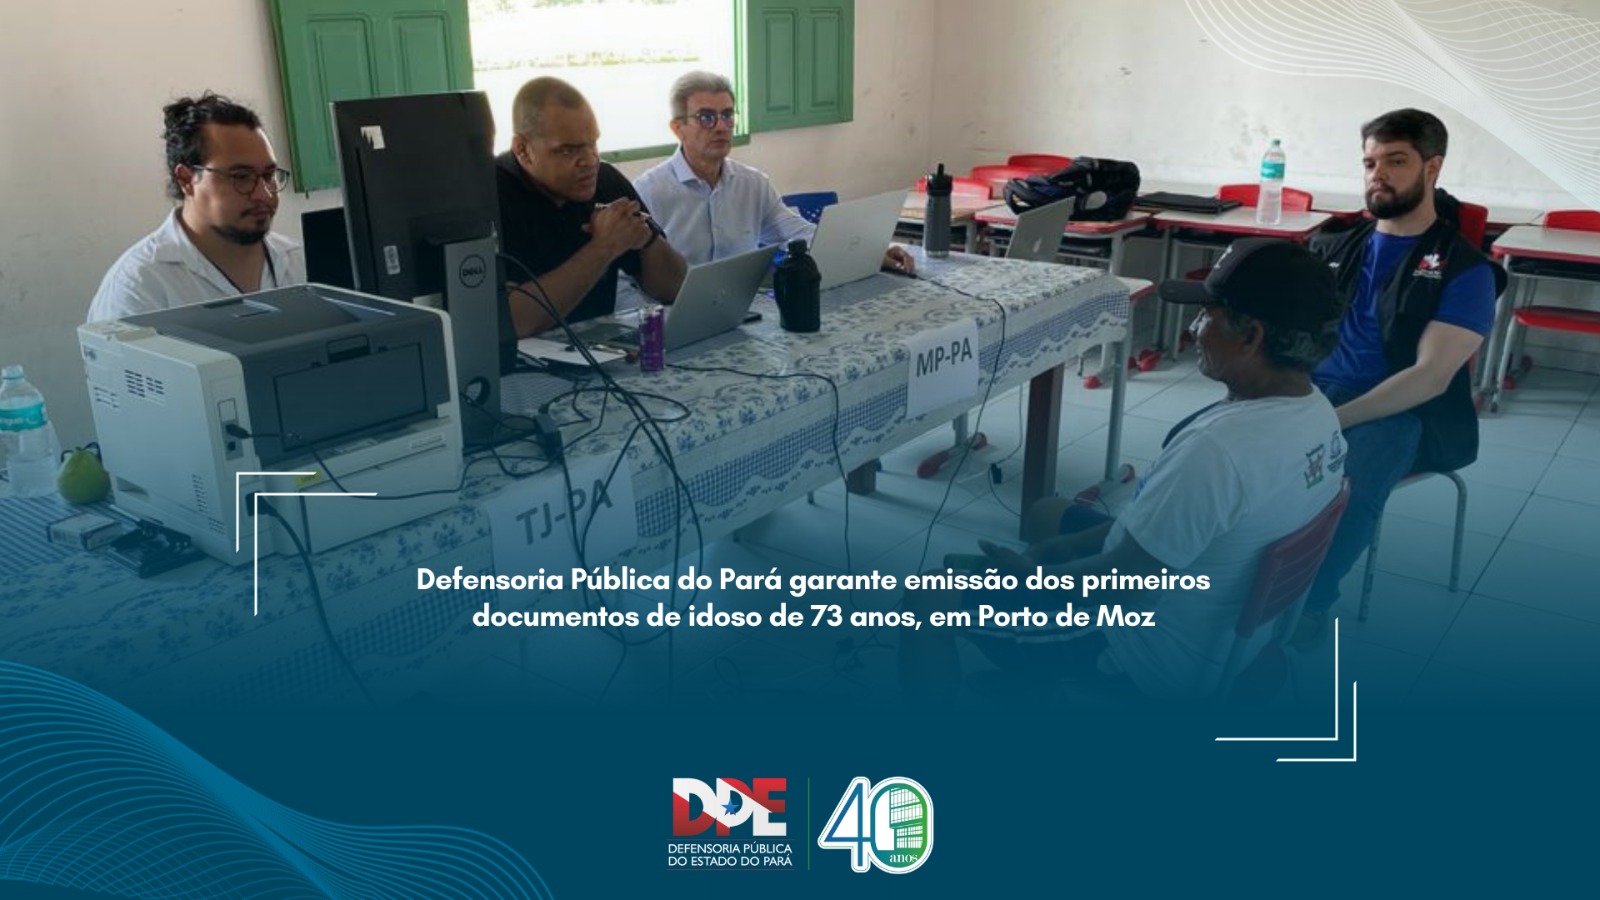 Defensoria Pública do Pará garante emissão dos primeiros documentos de idoso de 73 anos, em Porto de Moz